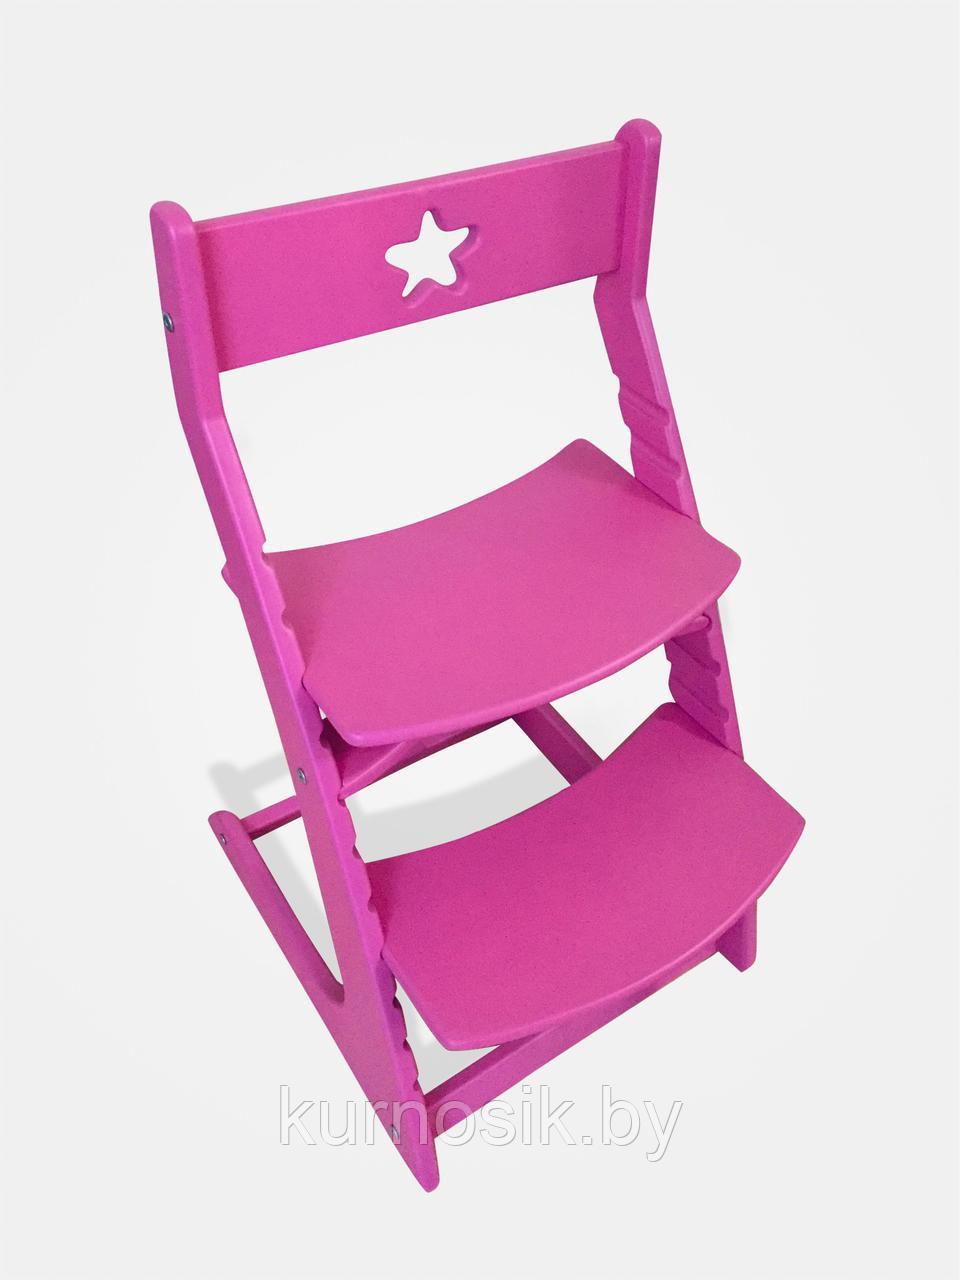 Растущий регулируемый школьный стул Ростик Rostik Розовый СП1, фото 1